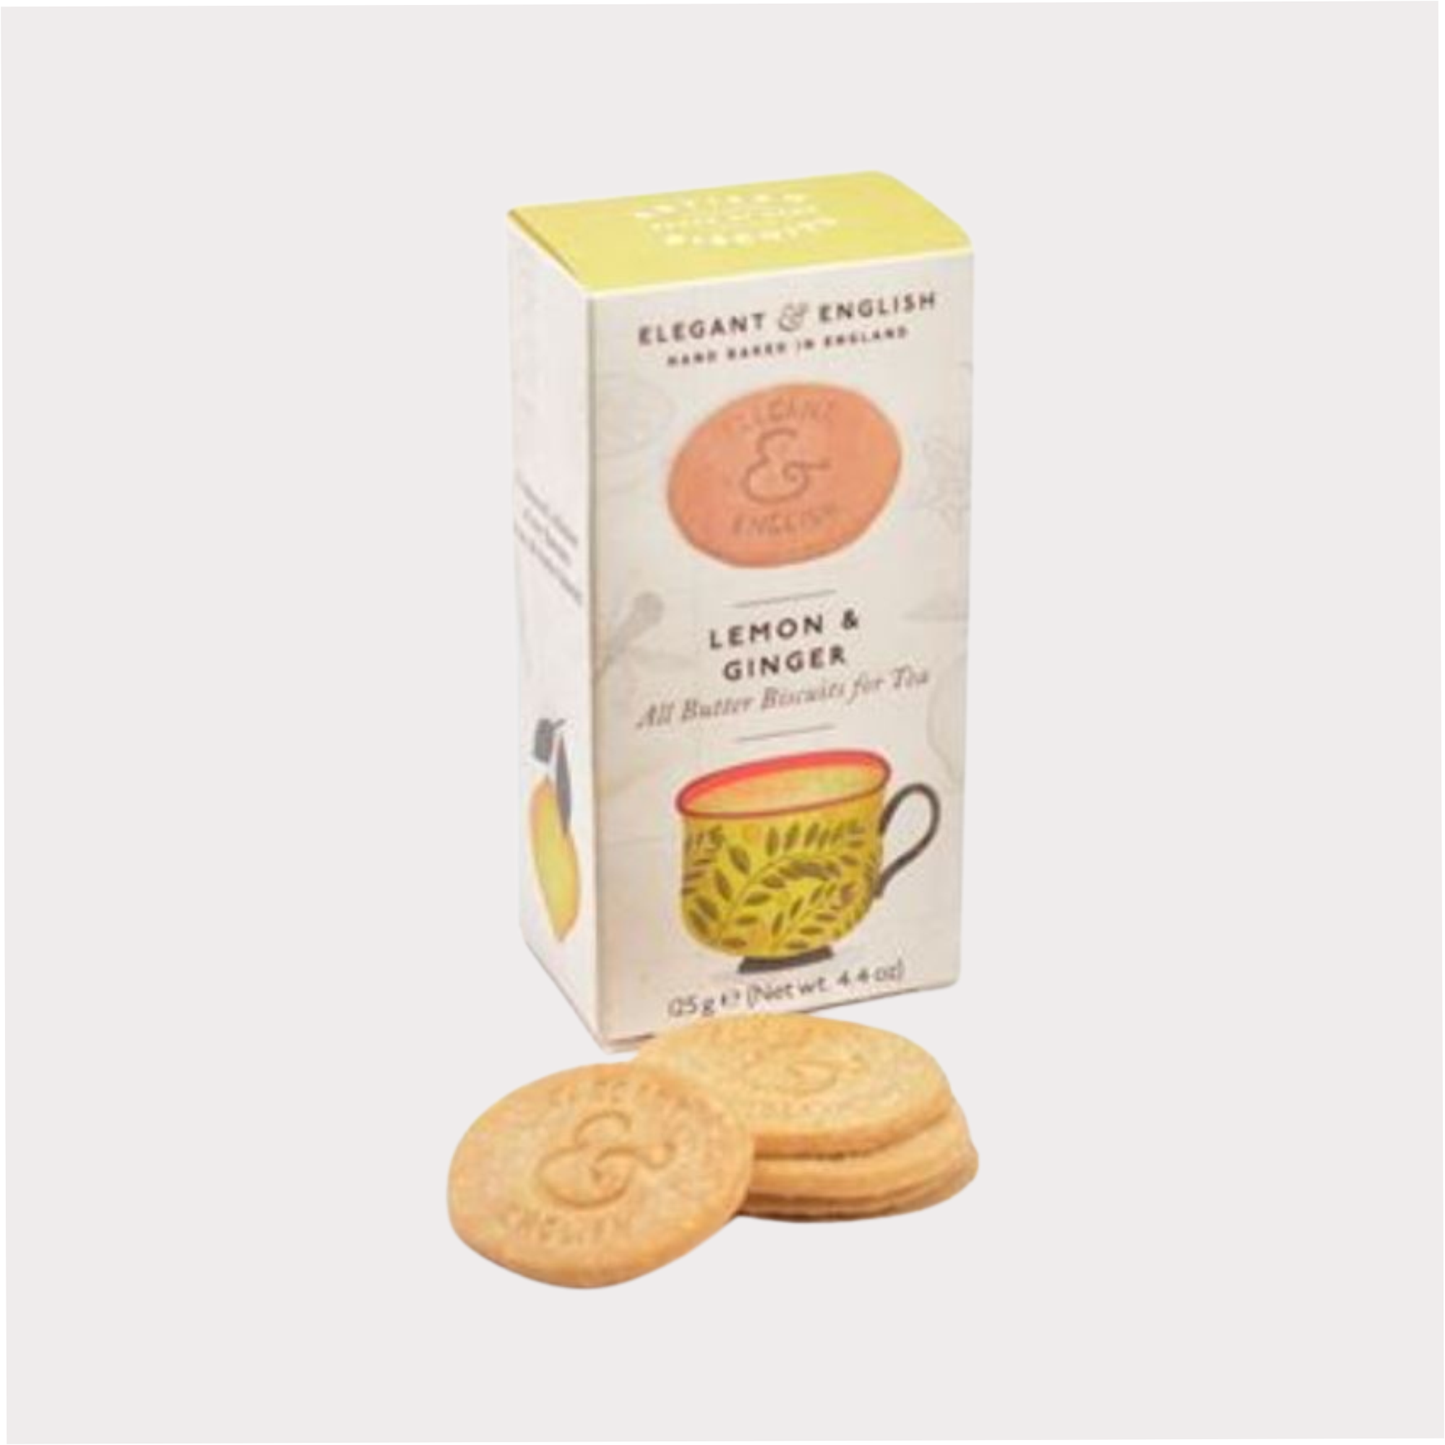 Butter Biscuits "Lemon & Ginger", 125 Gramm, 6 Pckg.